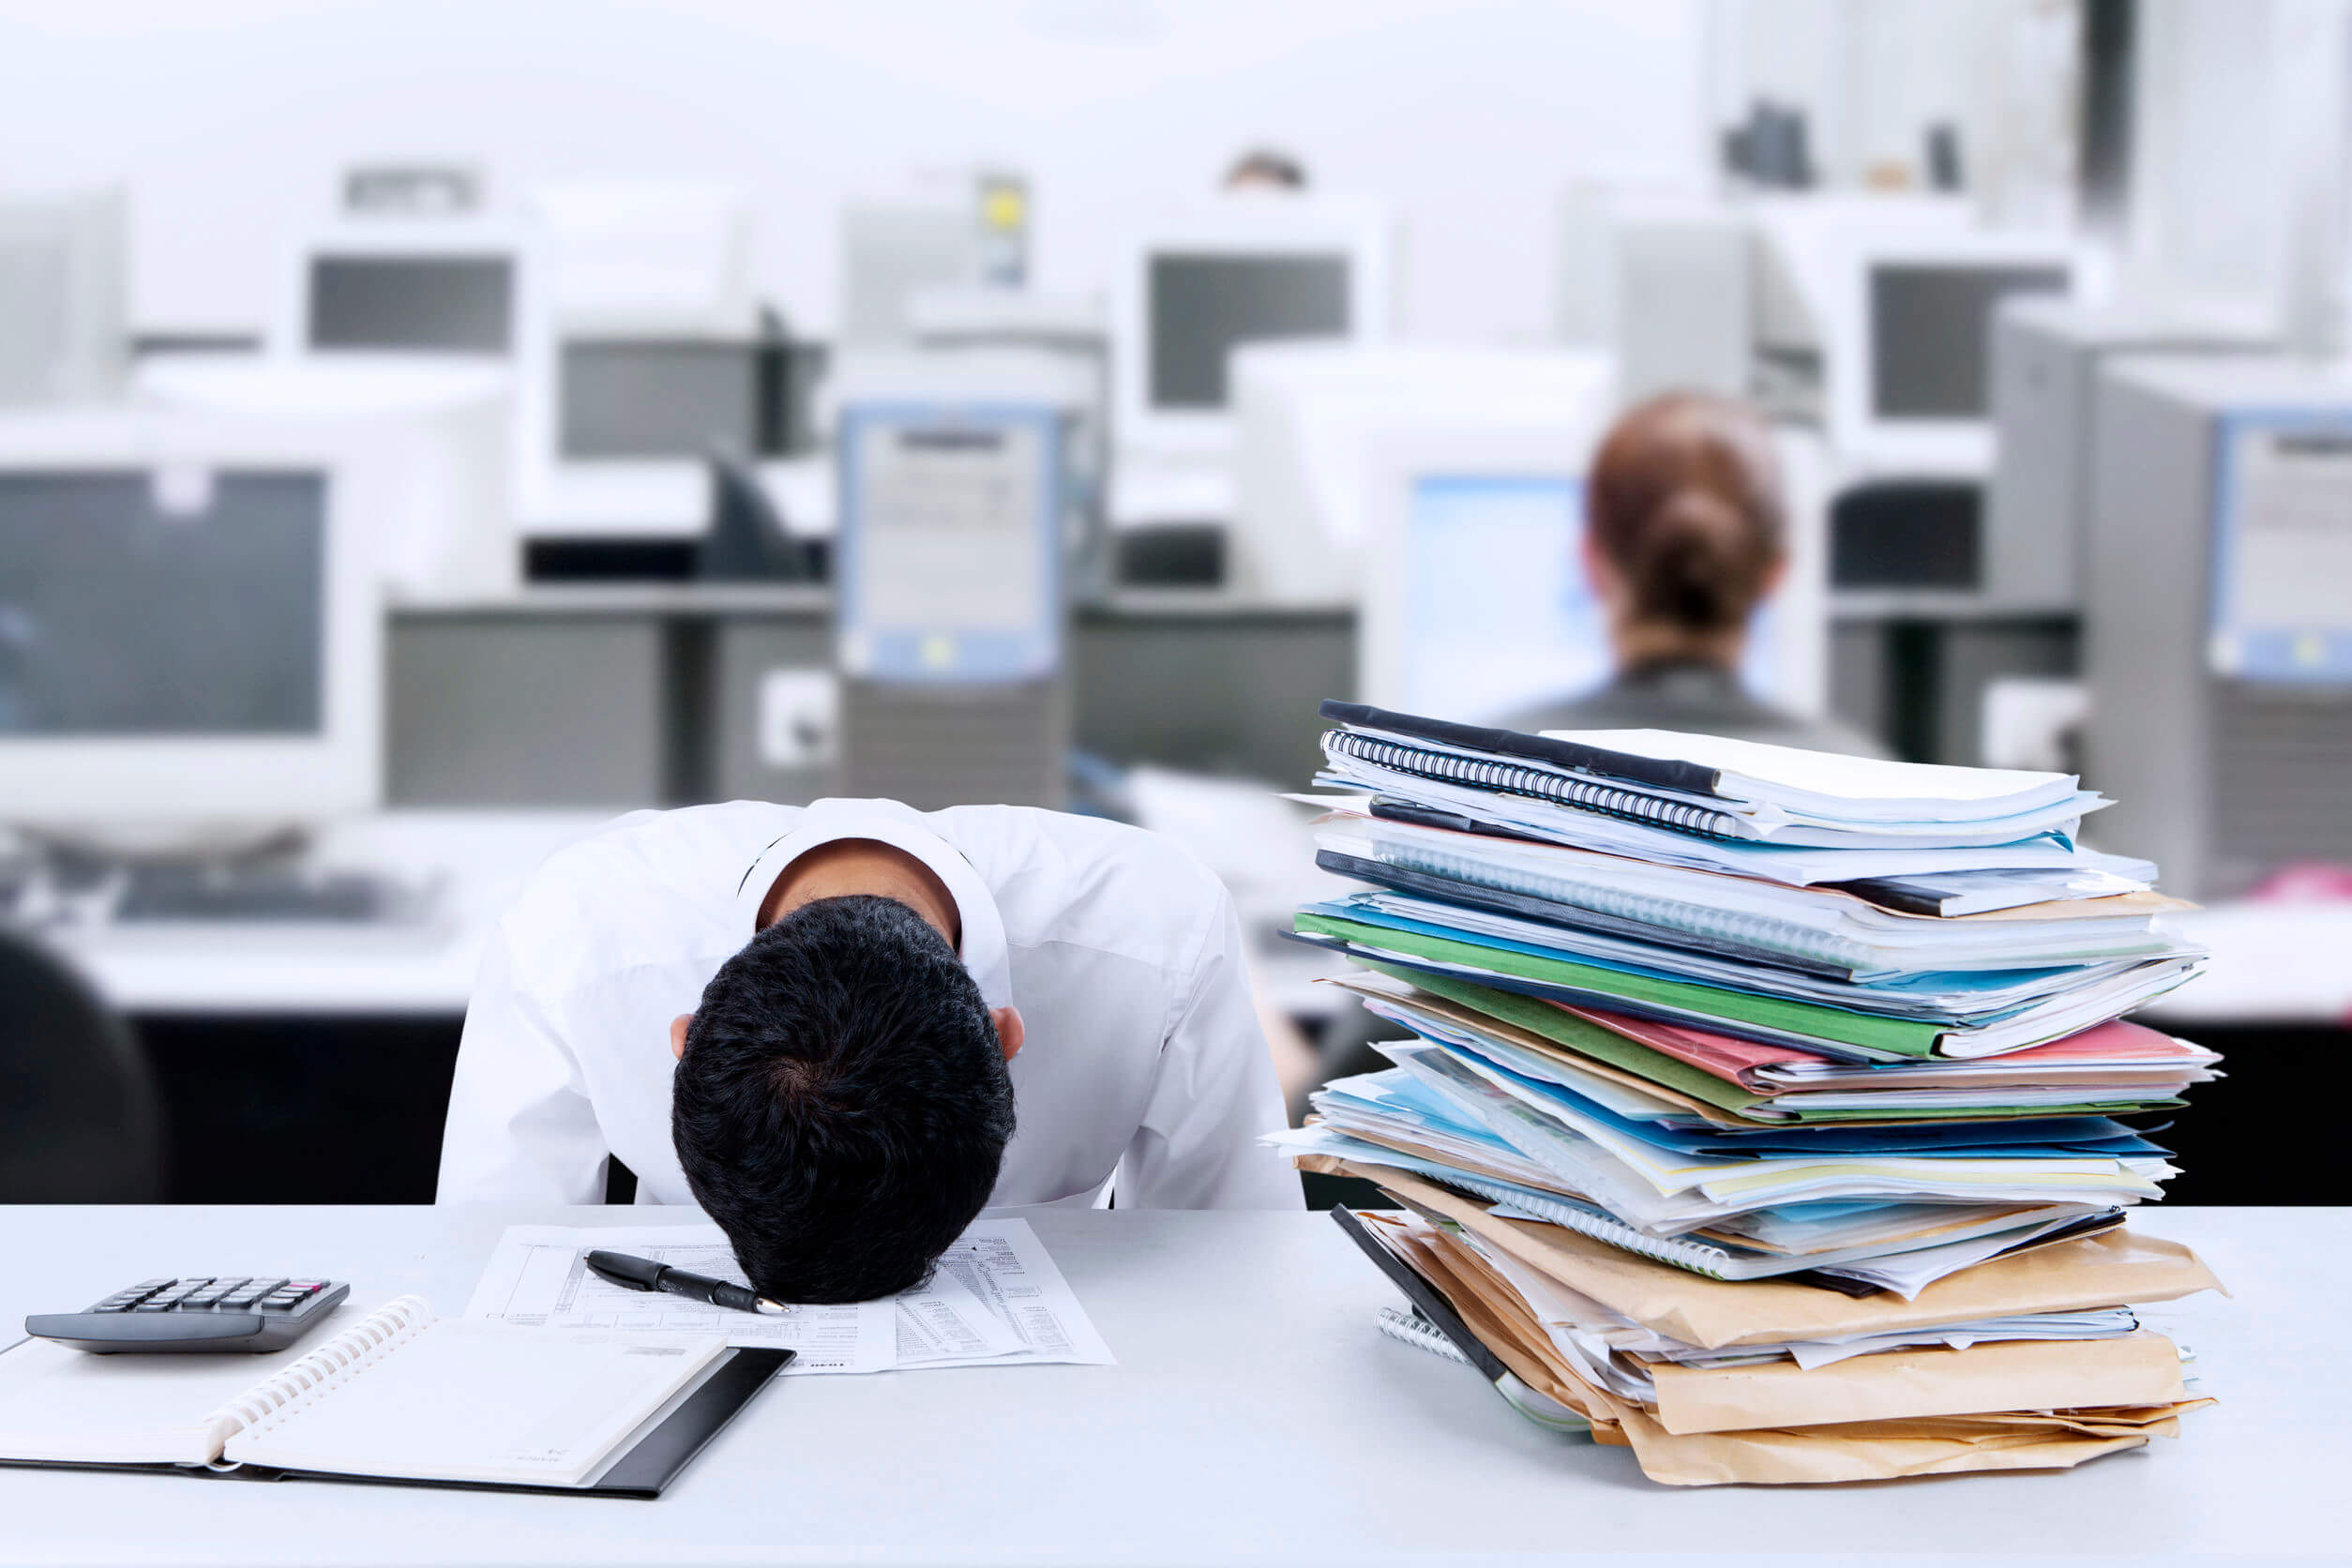 El cansancio normal y burnout laboral pueden evitarse